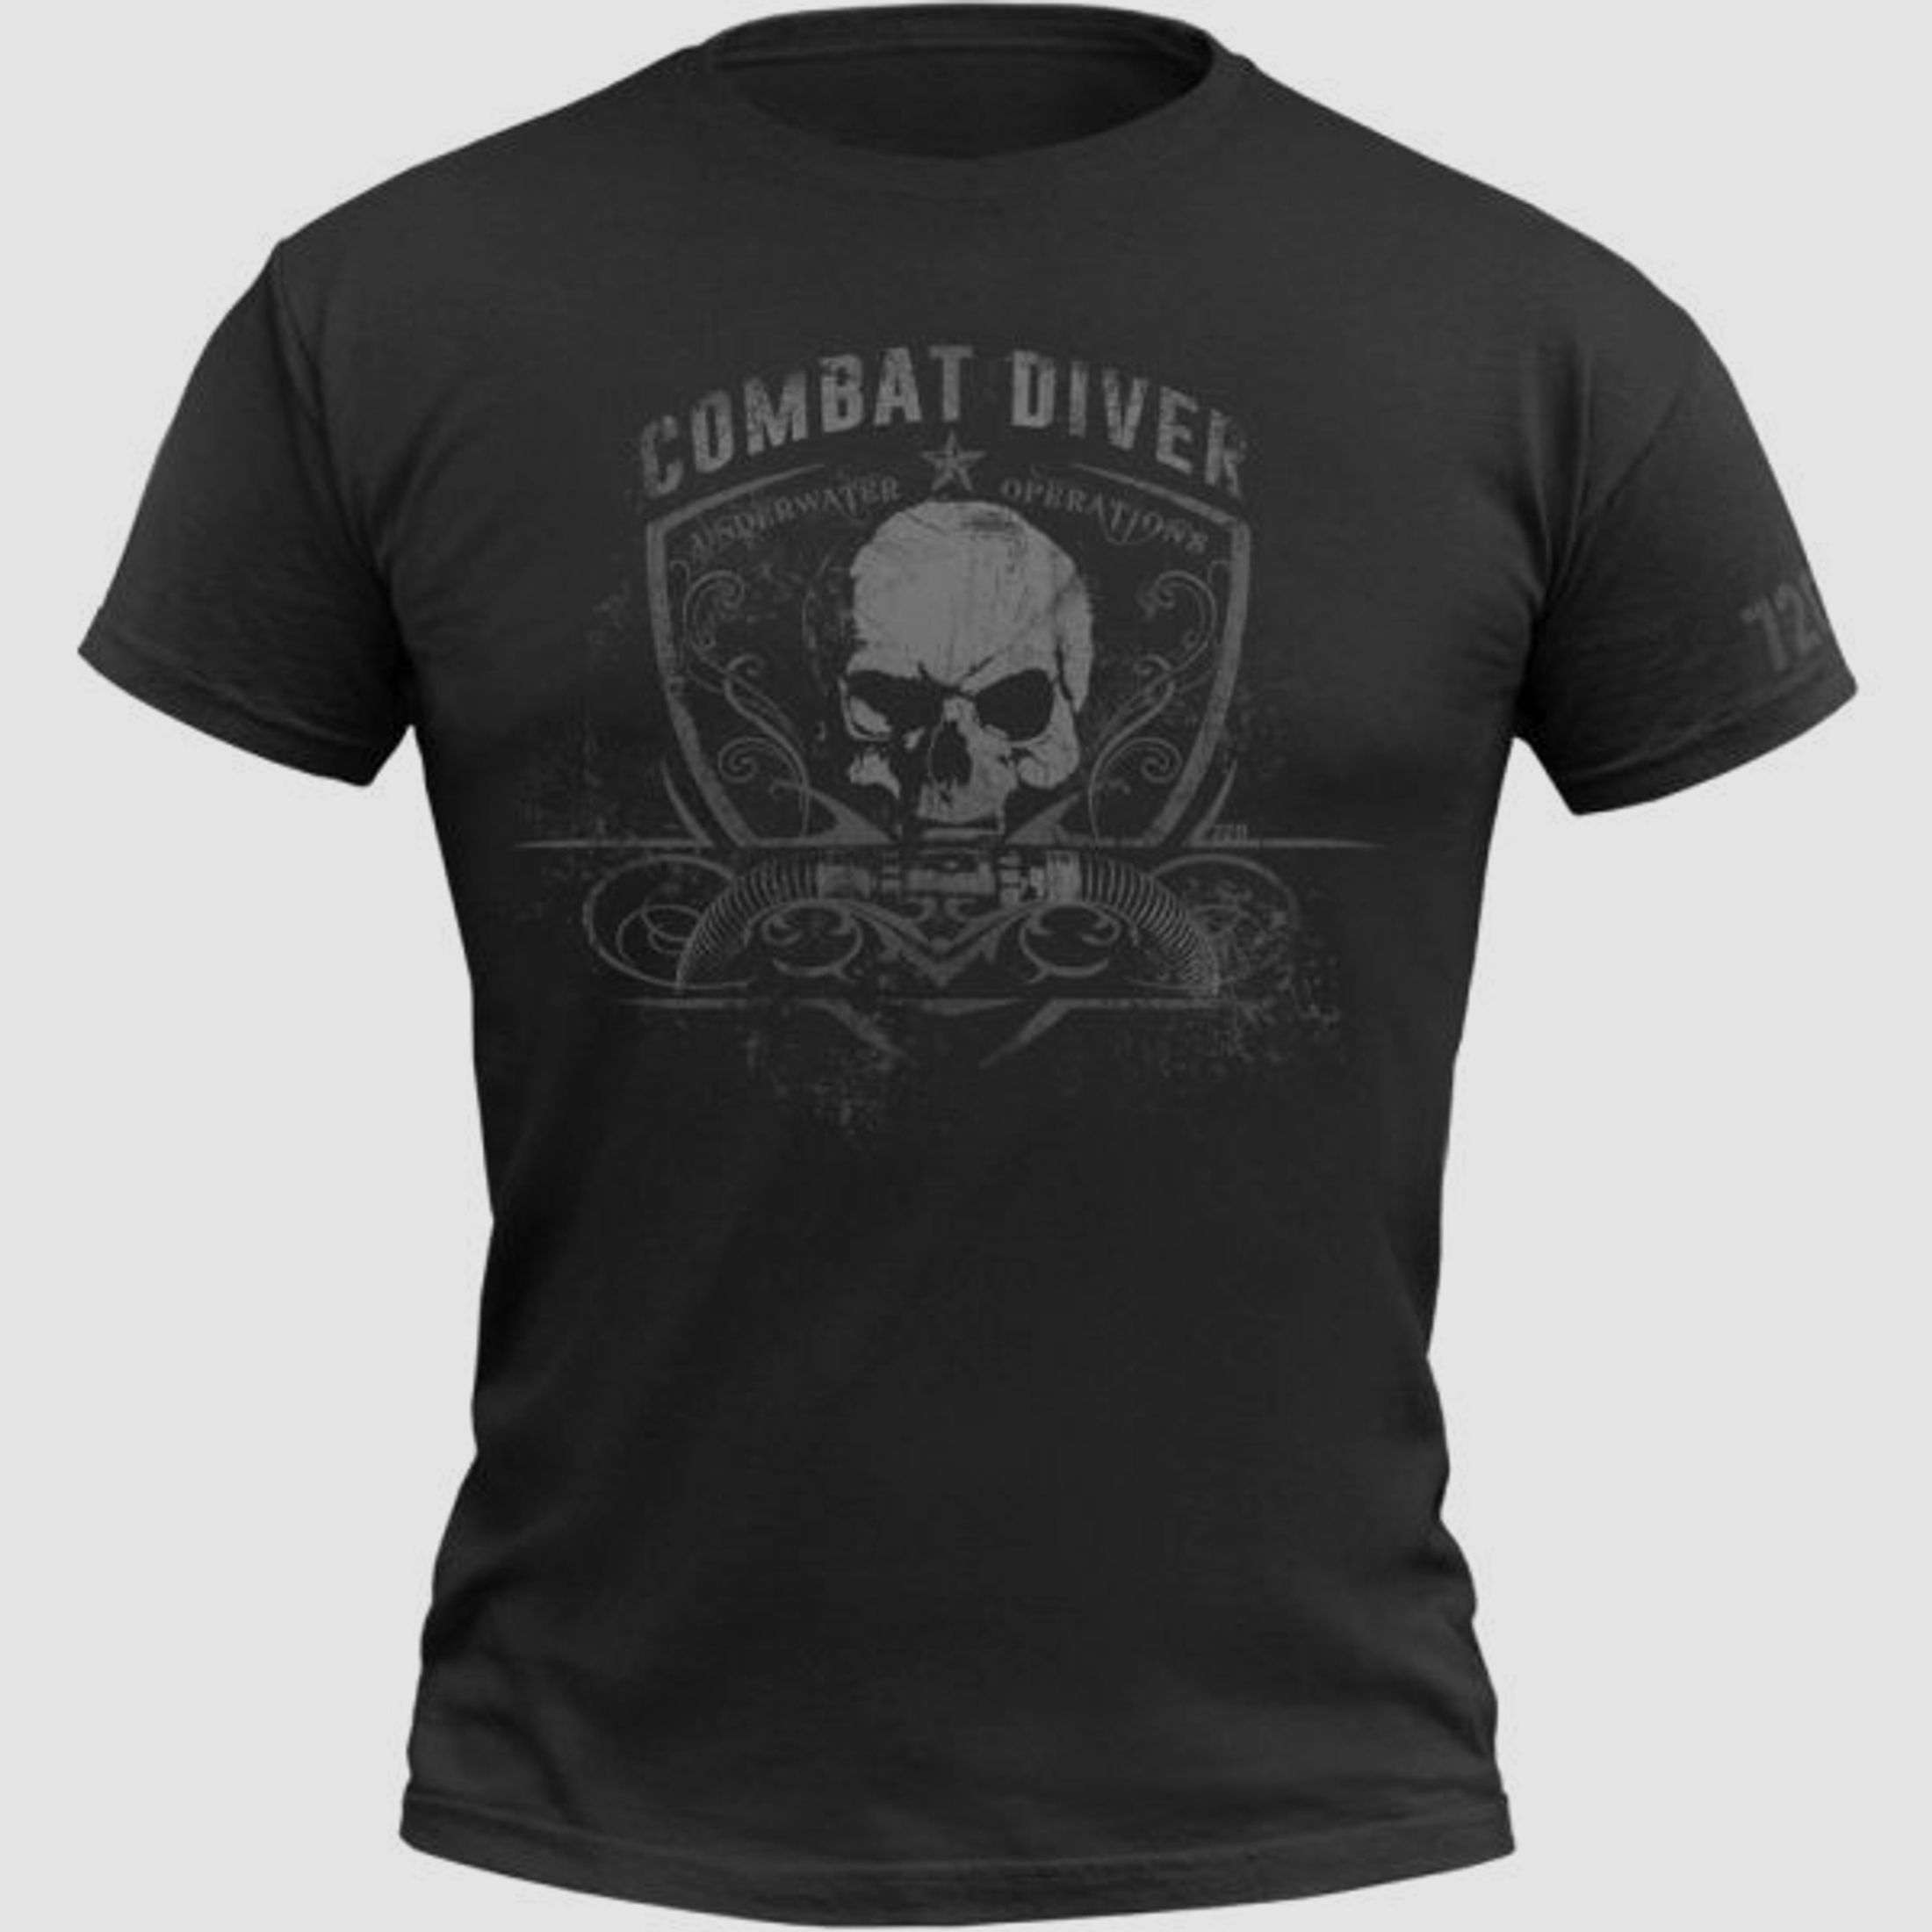 720gear 720gear T-Shirt Combat Diver schwarz